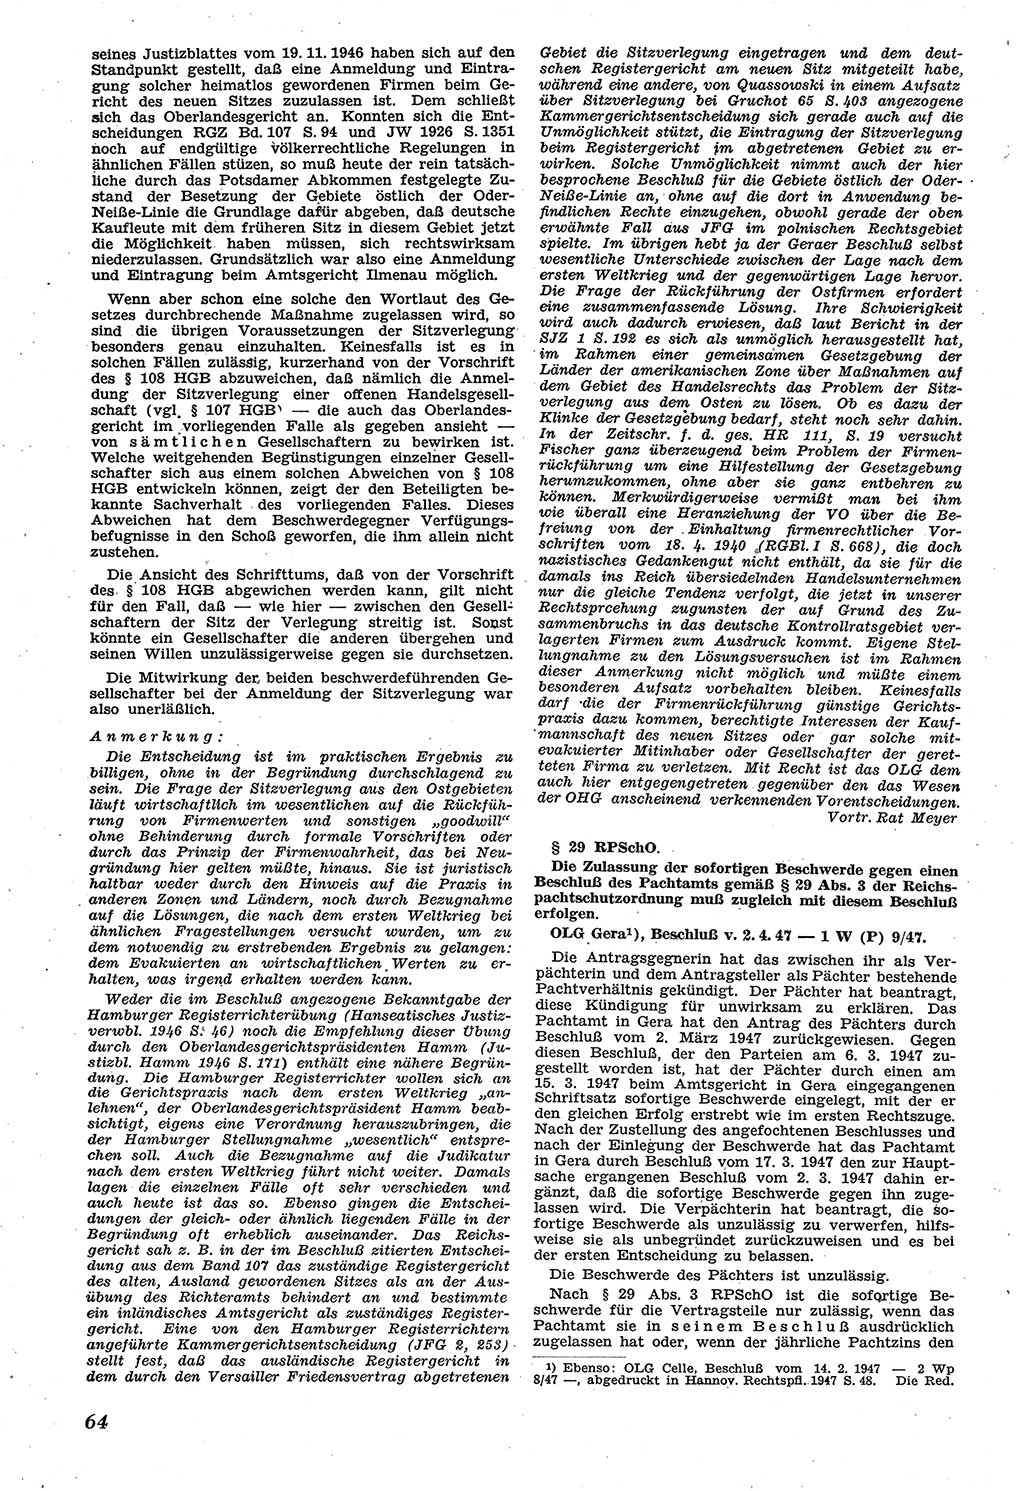 Neue Justiz (NJ), Zeitschrift für Recht und Rechtswissenschaft [Sowjetische Besatzungszone (SBZ) Deutschland], 1. Jahrgang 1947, Seite 64 (NJ SBZ Dtl. 1947, S. 64)